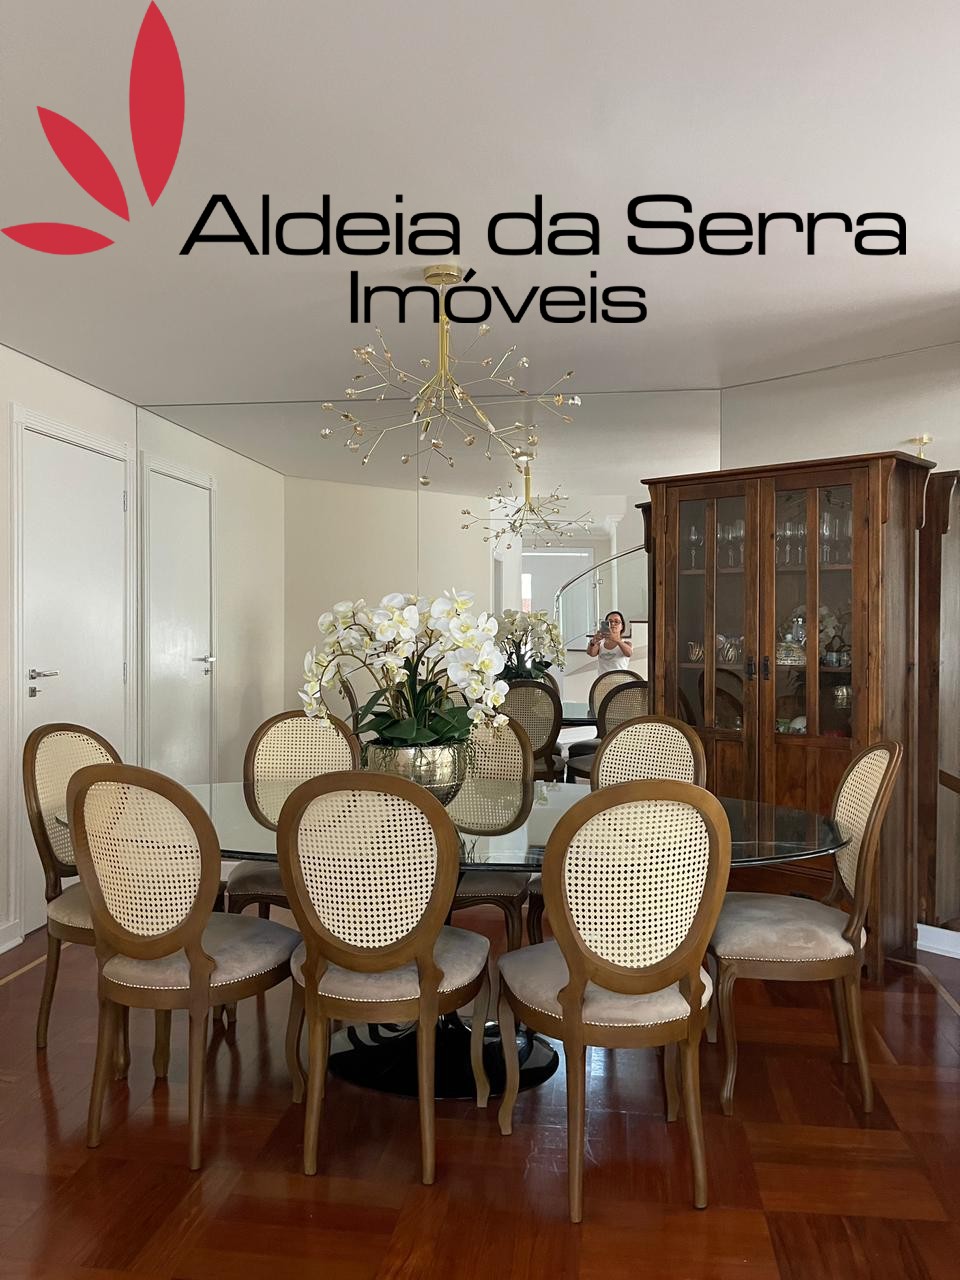 /admin/imoveis/fotos/IMG-20210614-WA0023.jpg Aldeia da Serra Imoveis